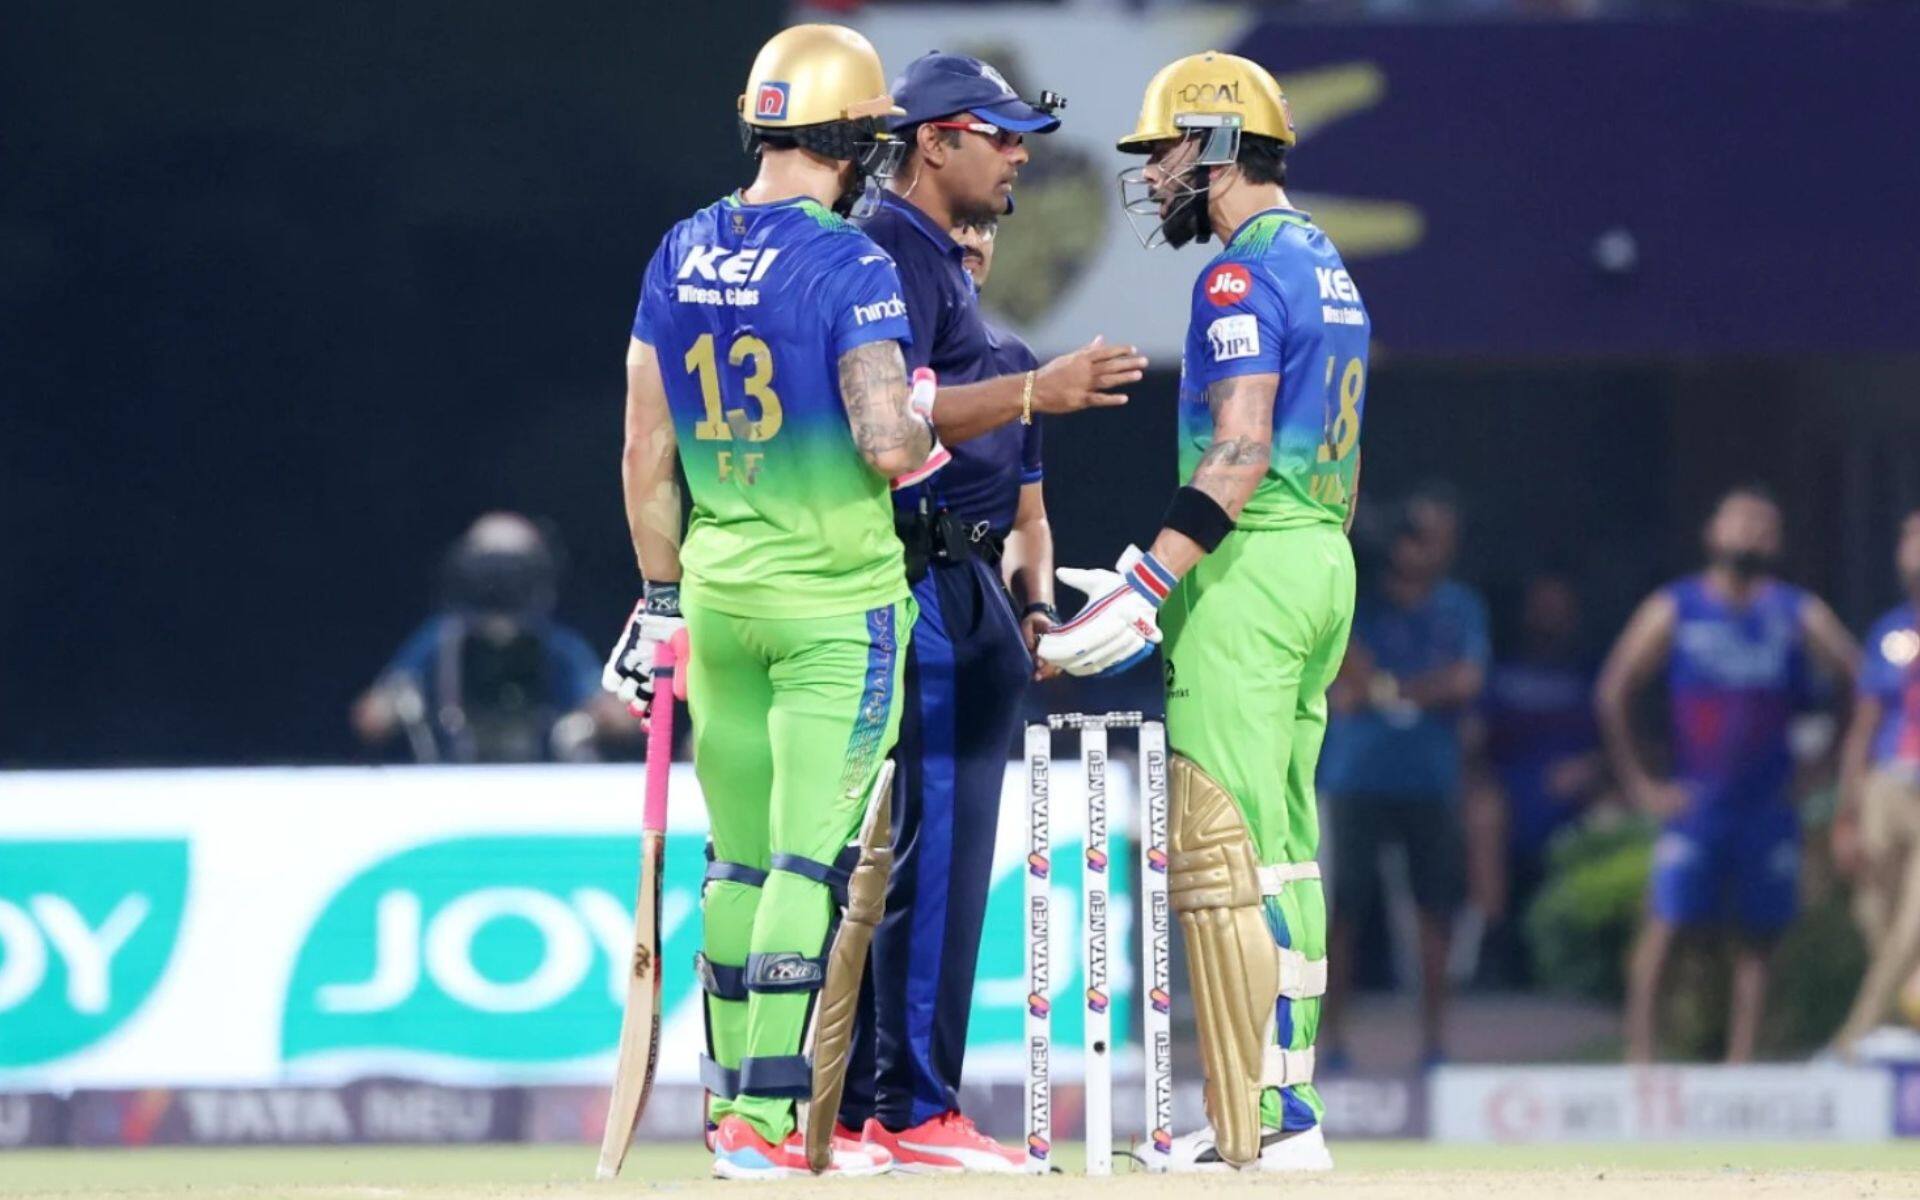 Virat Kohli arguing with the umpire after dismissal (BCCI)